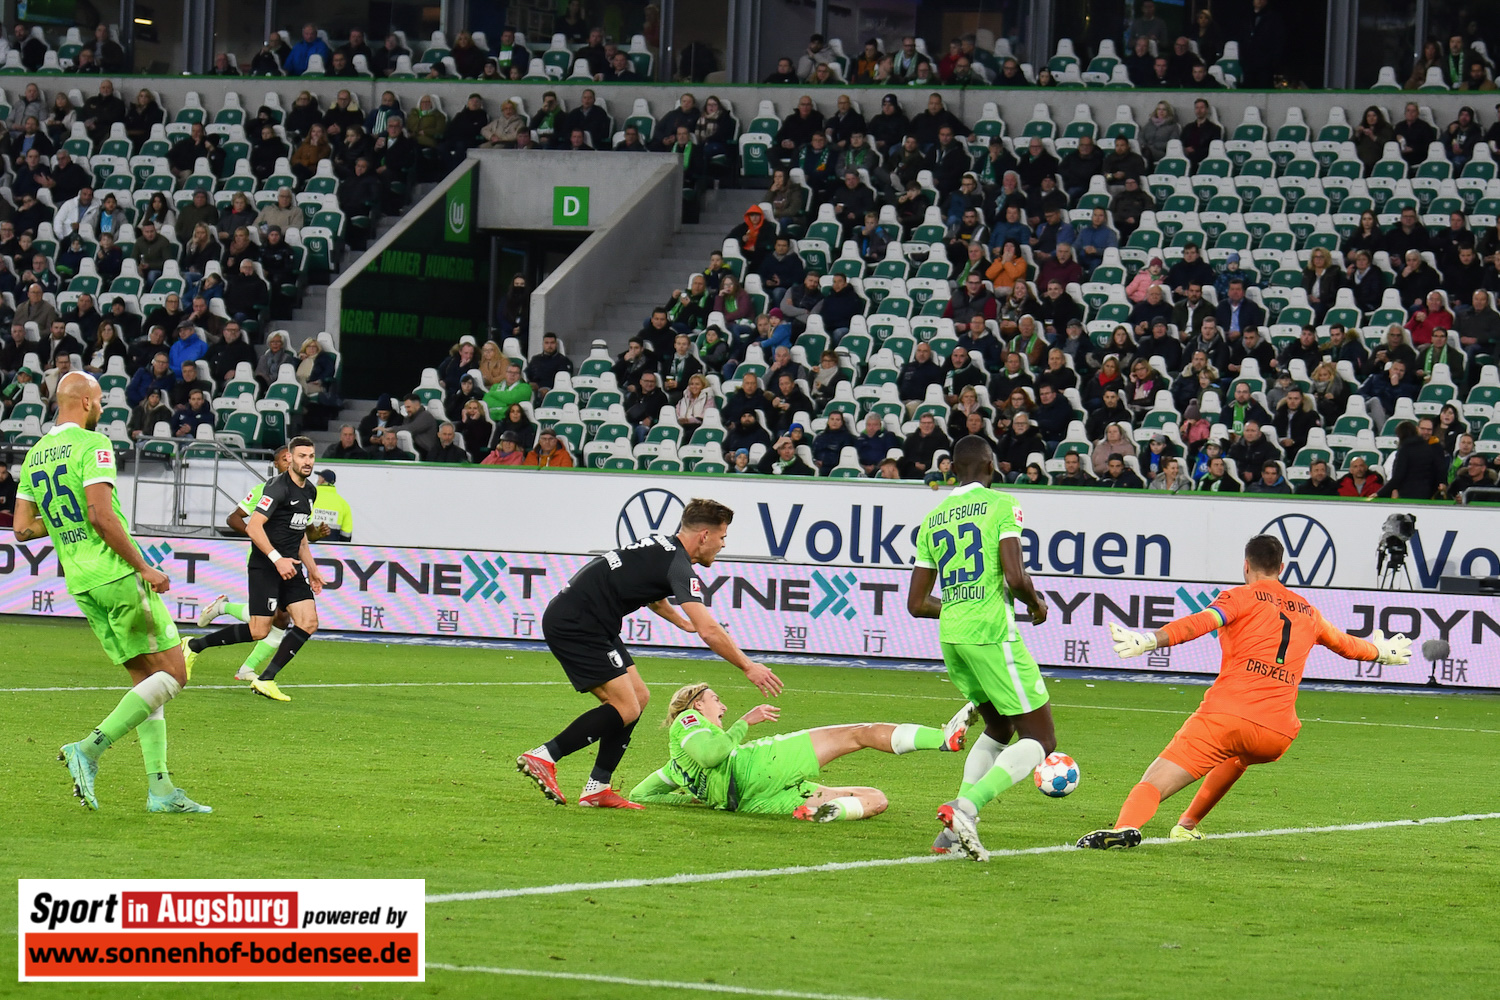 VfL Wolfsburg - FCA 06.11.21 - 37